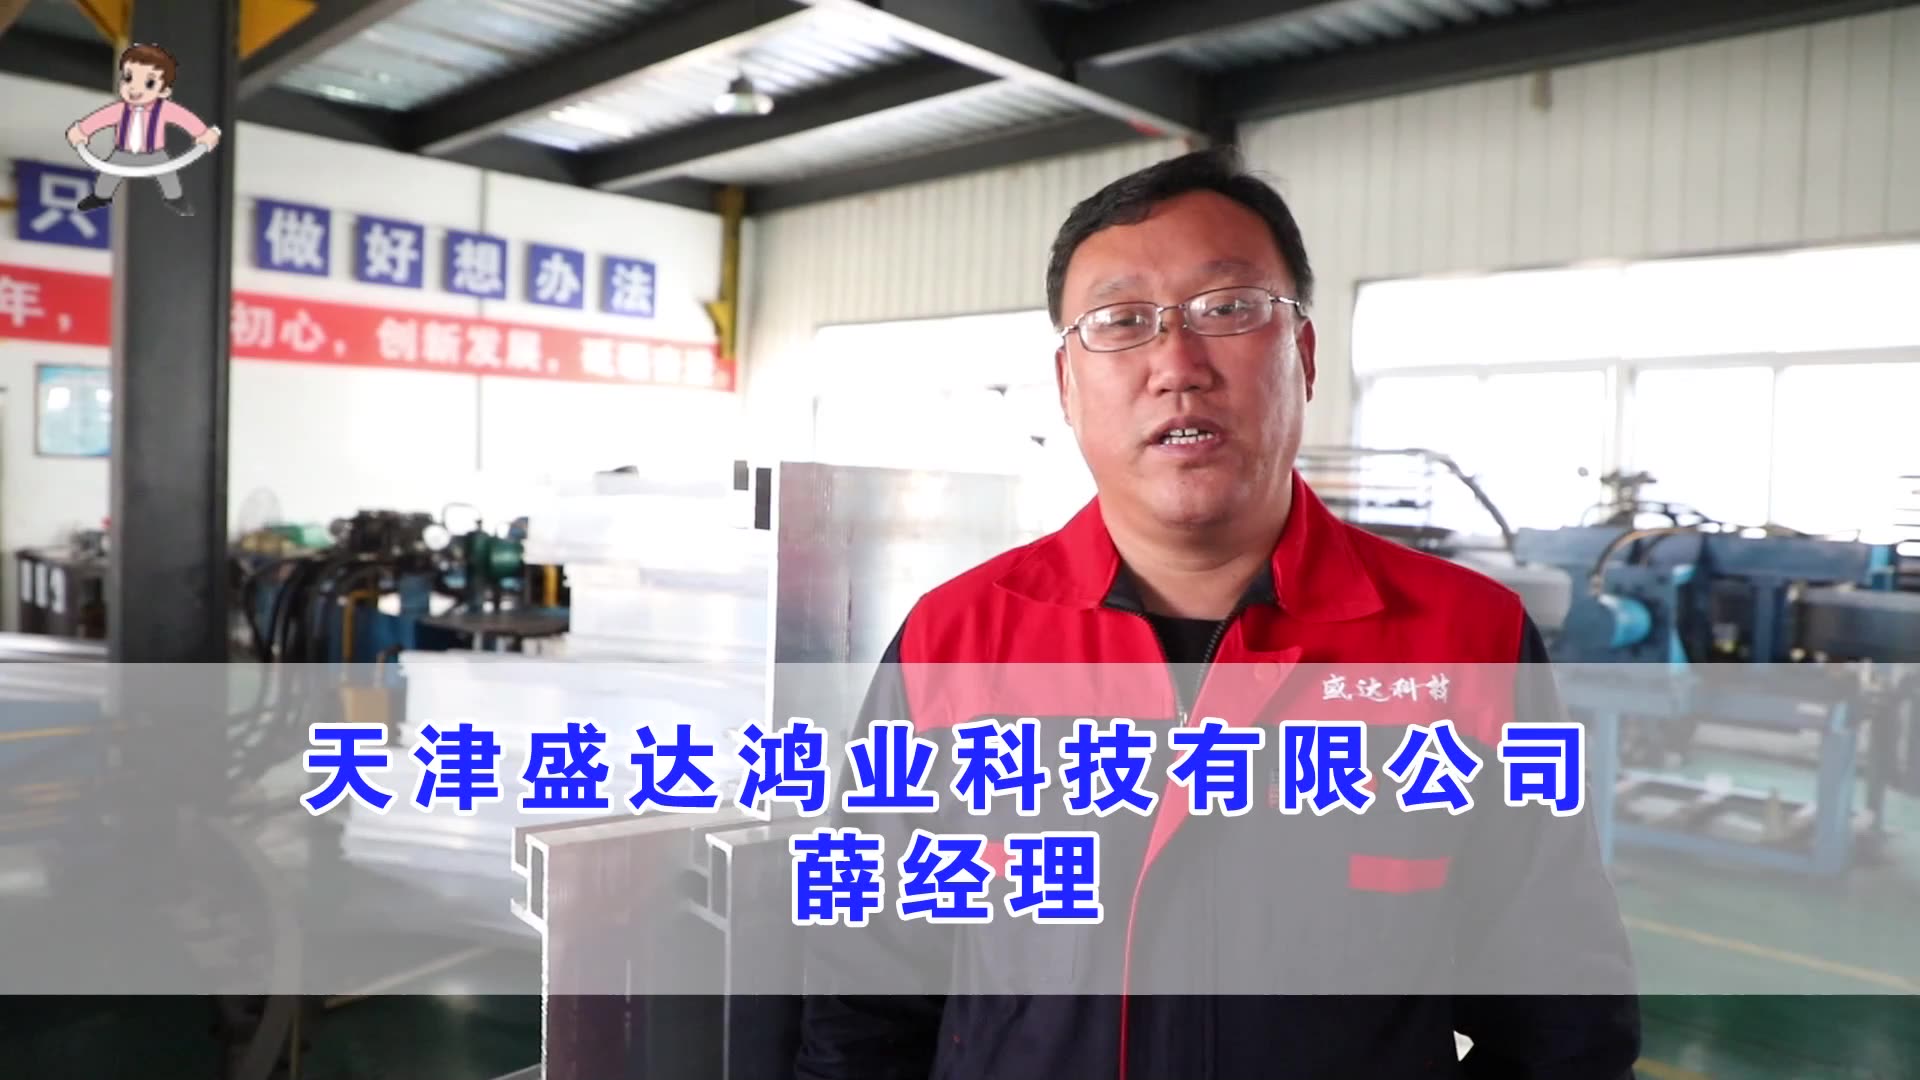 Manager Xue from Tianjin Shengda Hongye Technology Co., Ltd.